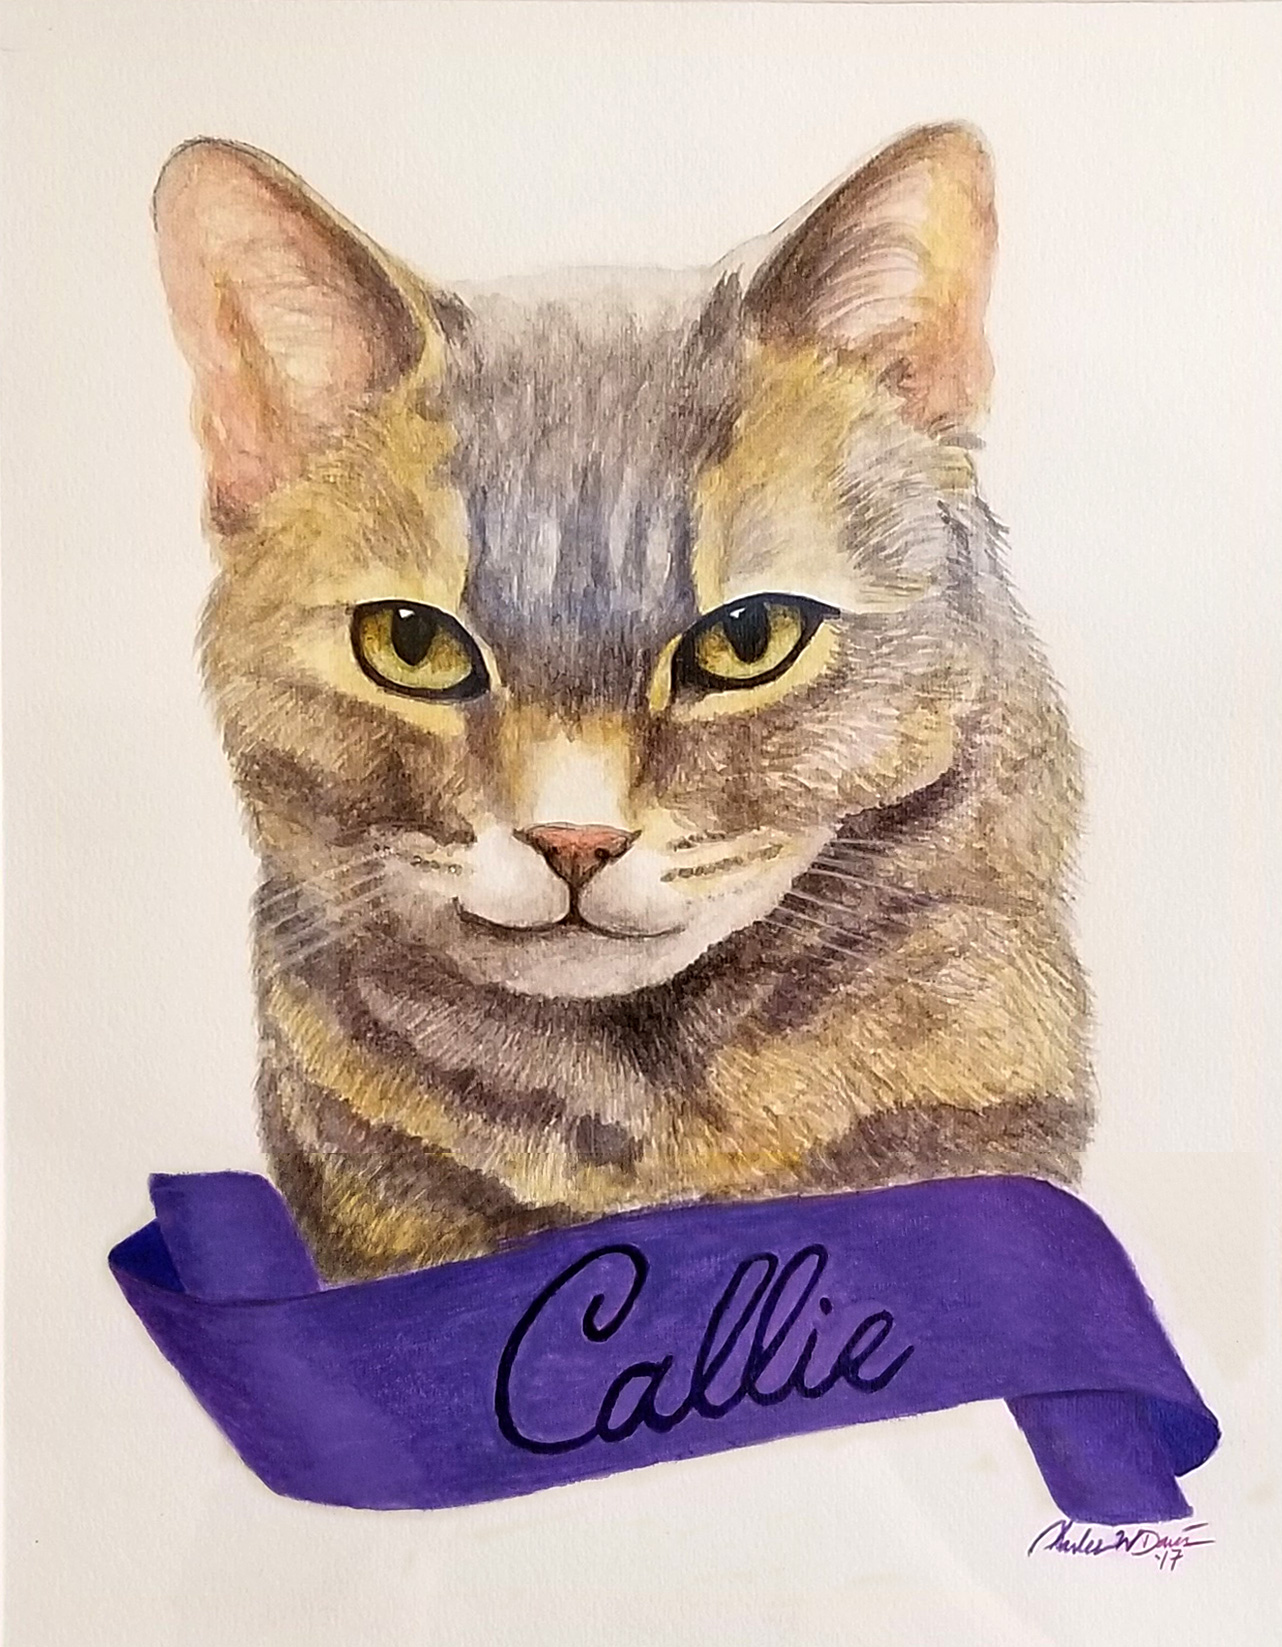 Callie cat